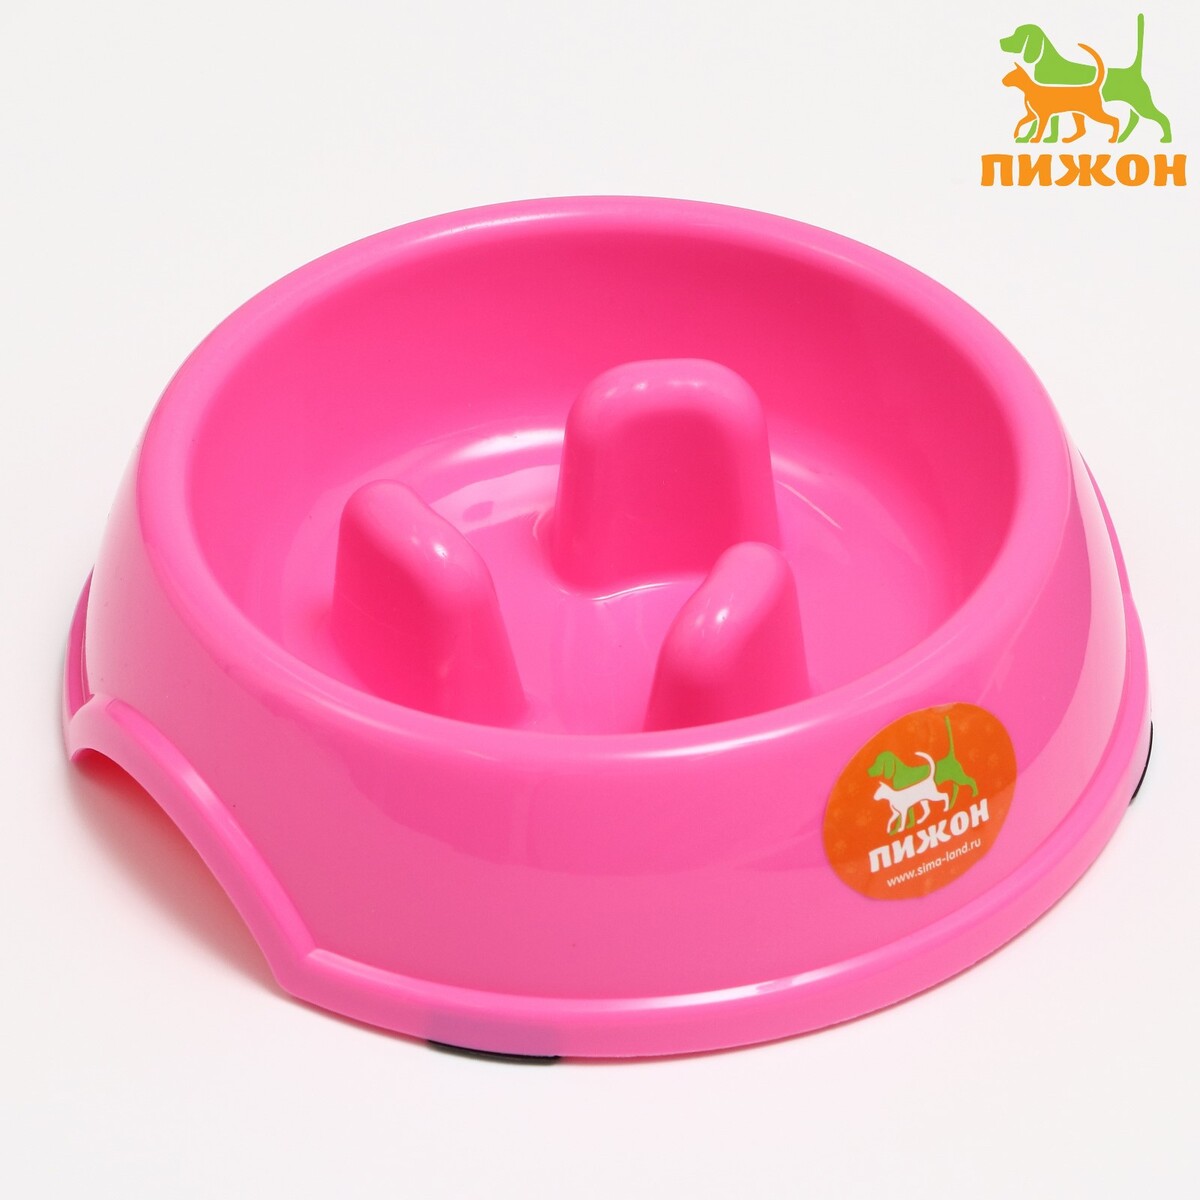 Миска пластиковая медленное кормление18 х 18,5 х 5,5 см, розовая миска для медленного кормления